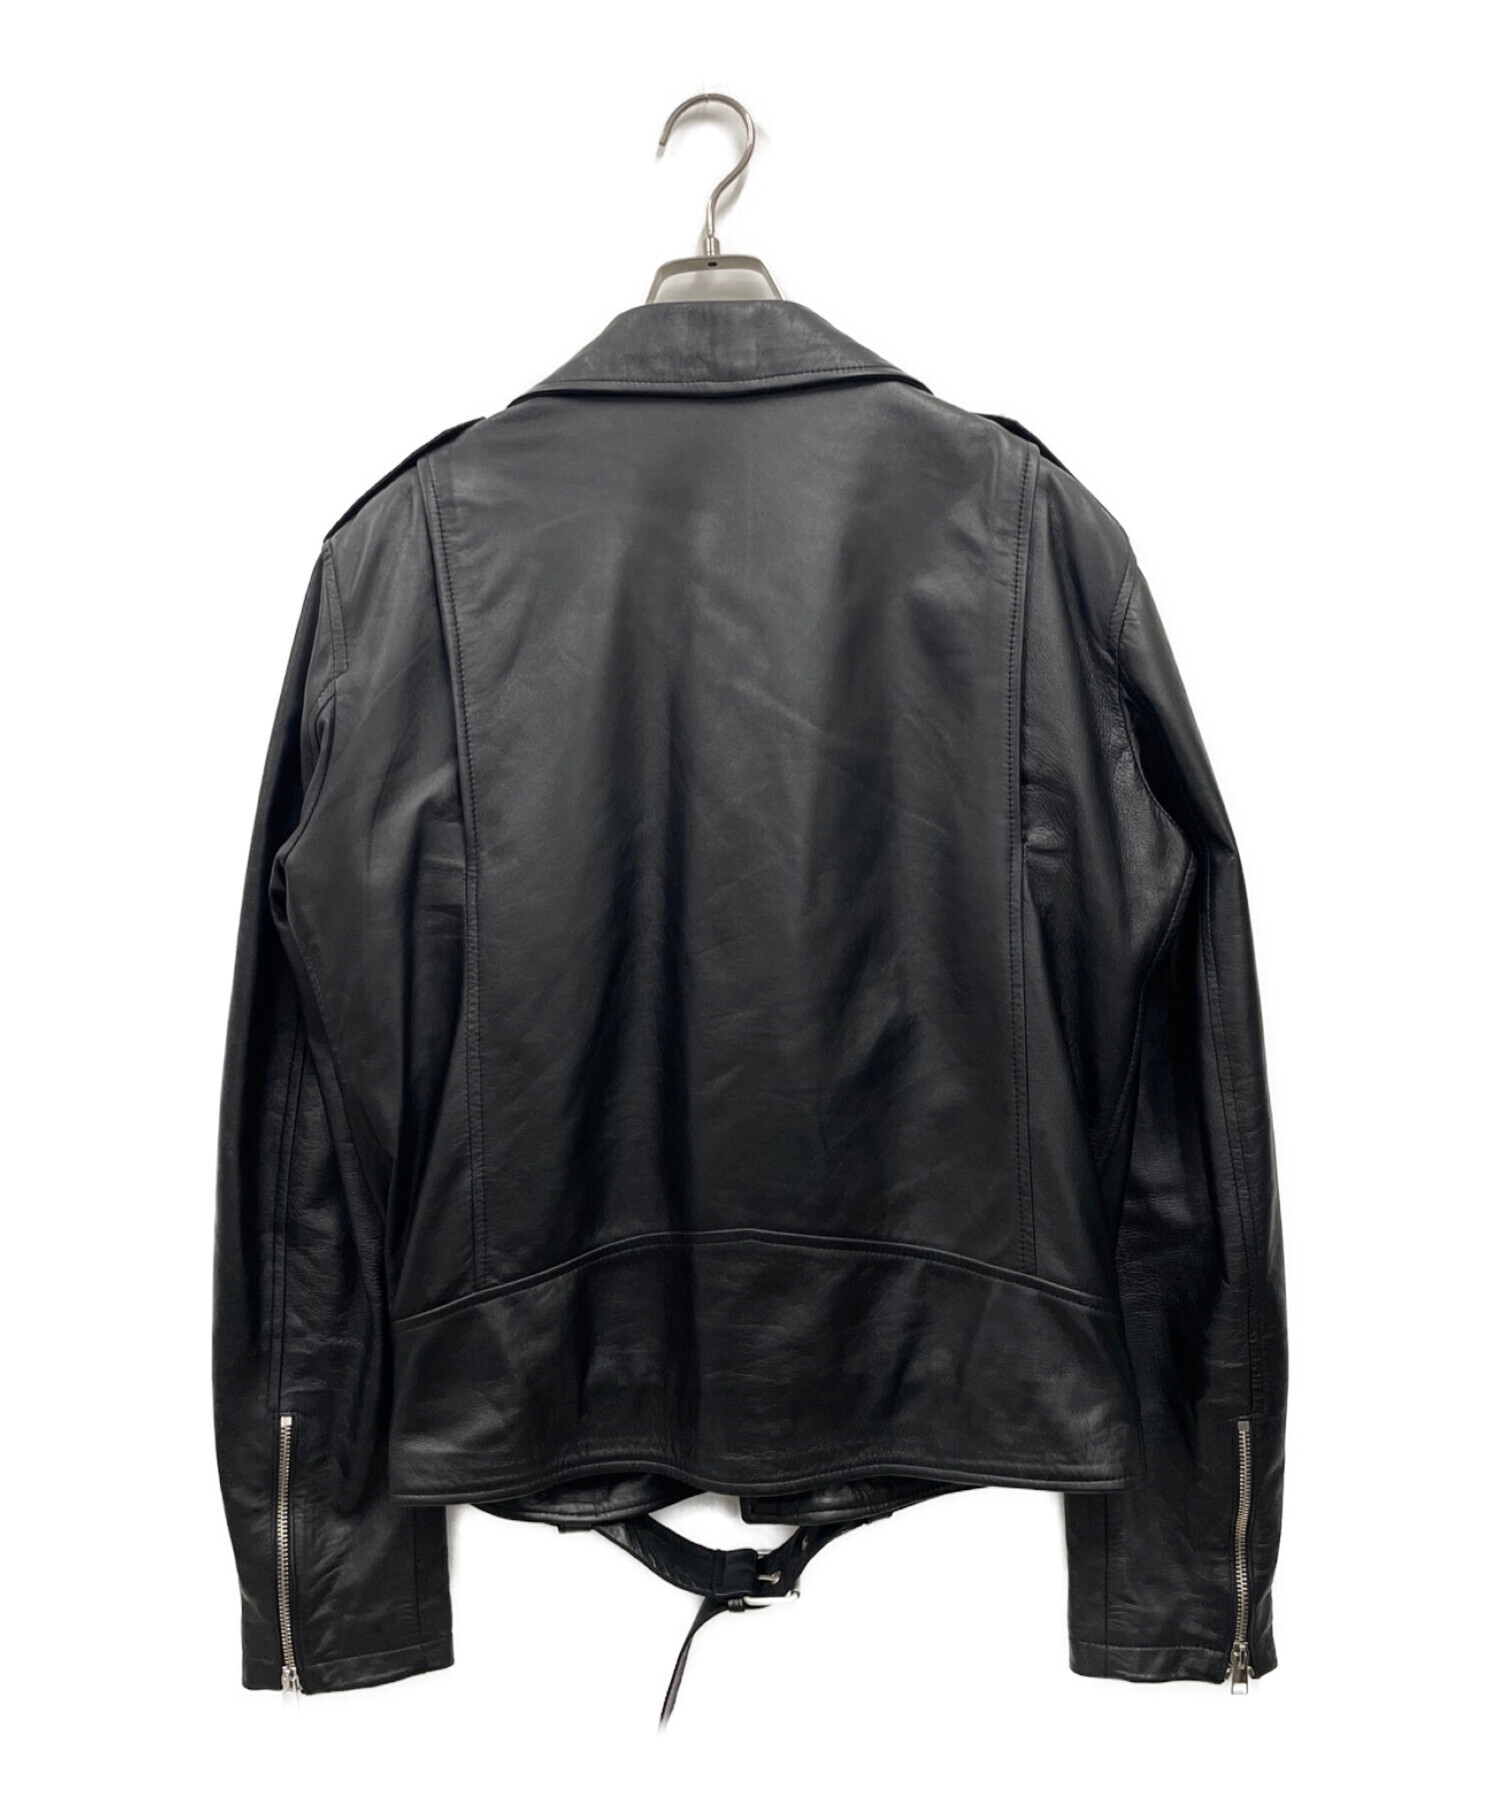 よろしくご検討くださいませDelanデラン 黒シープレザーの両胸ポケットシングルライダースジャケット新品